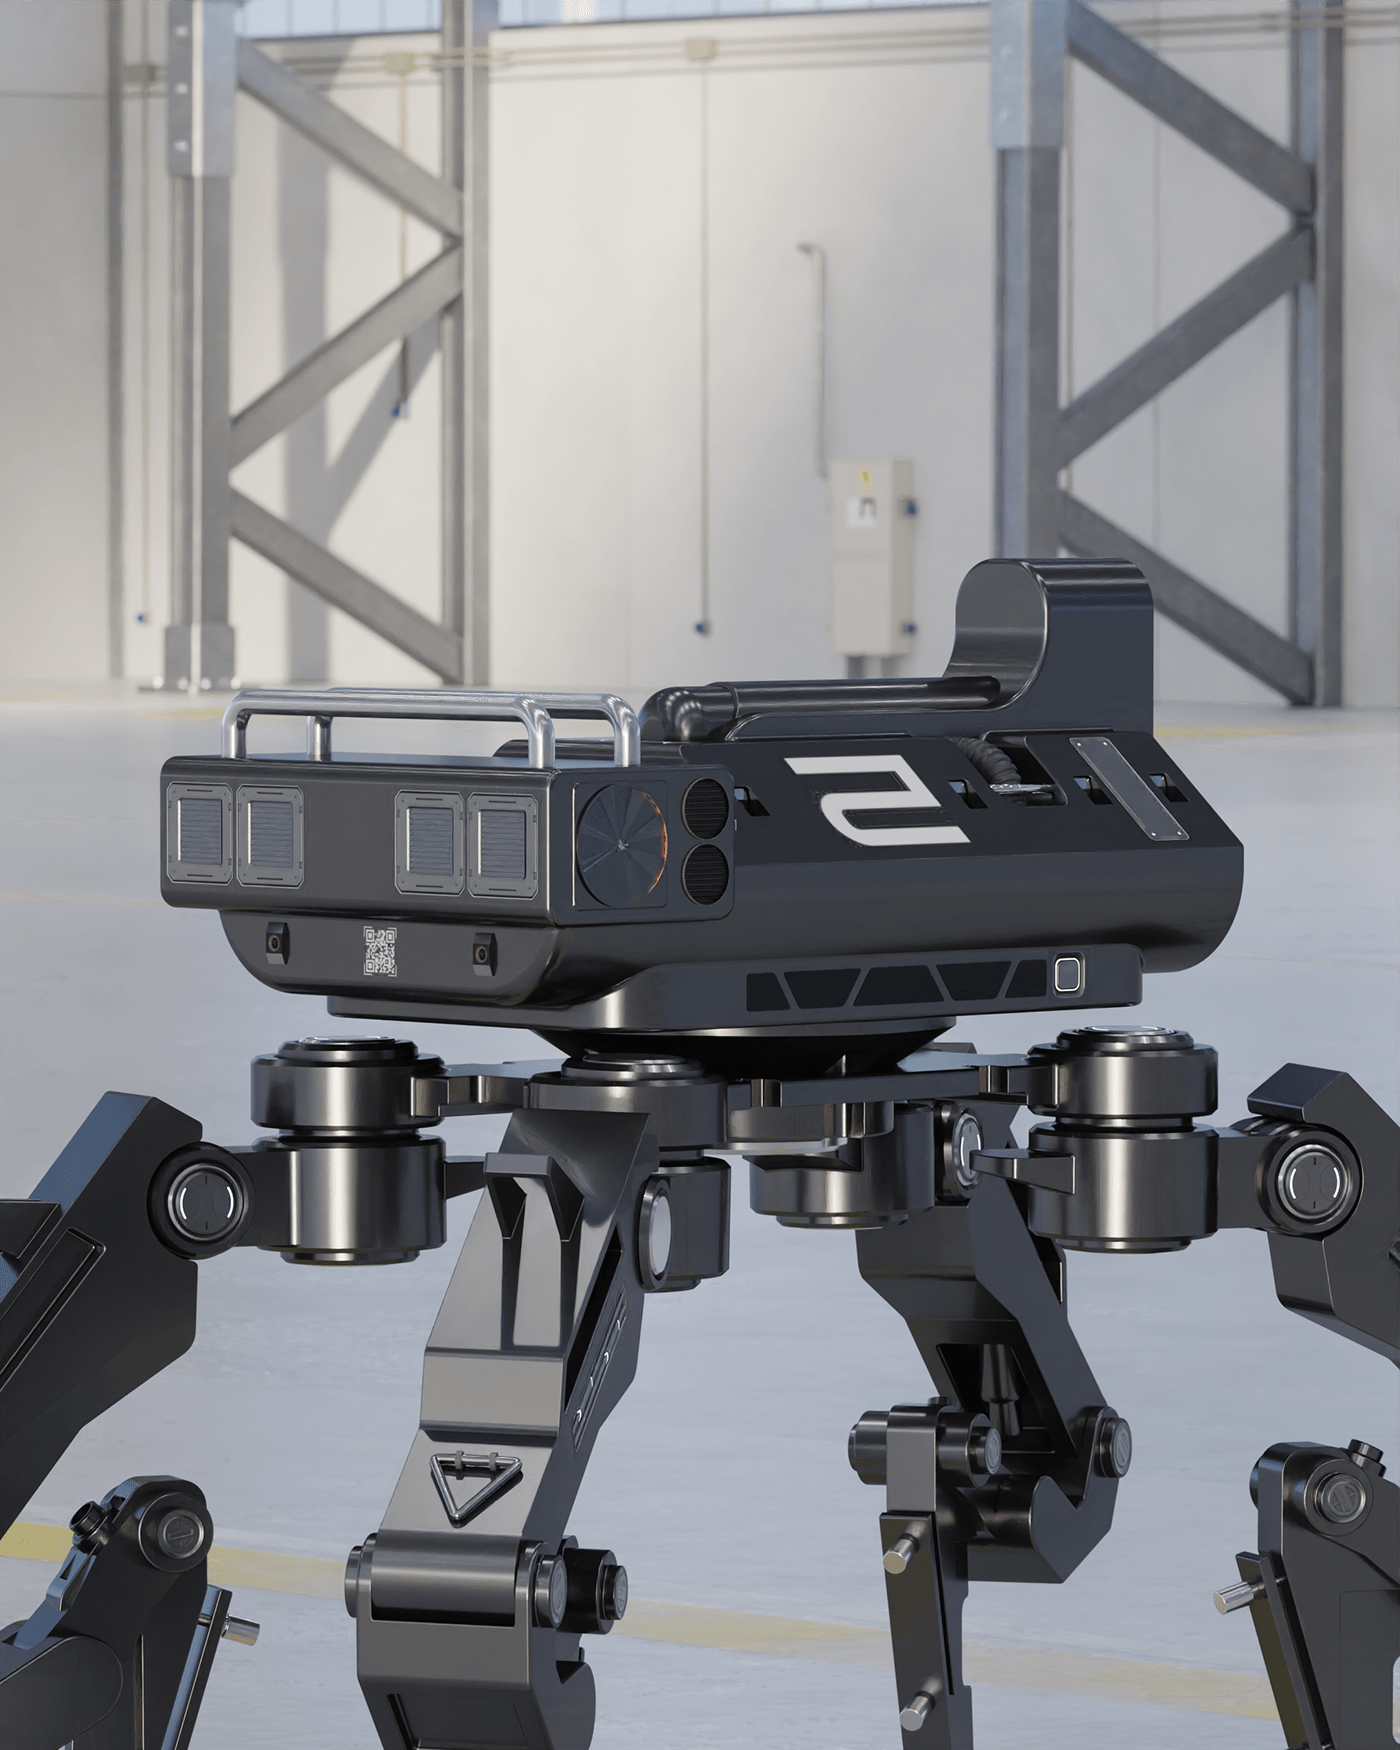 akin scout robot model blender industrial design product design  3D Render